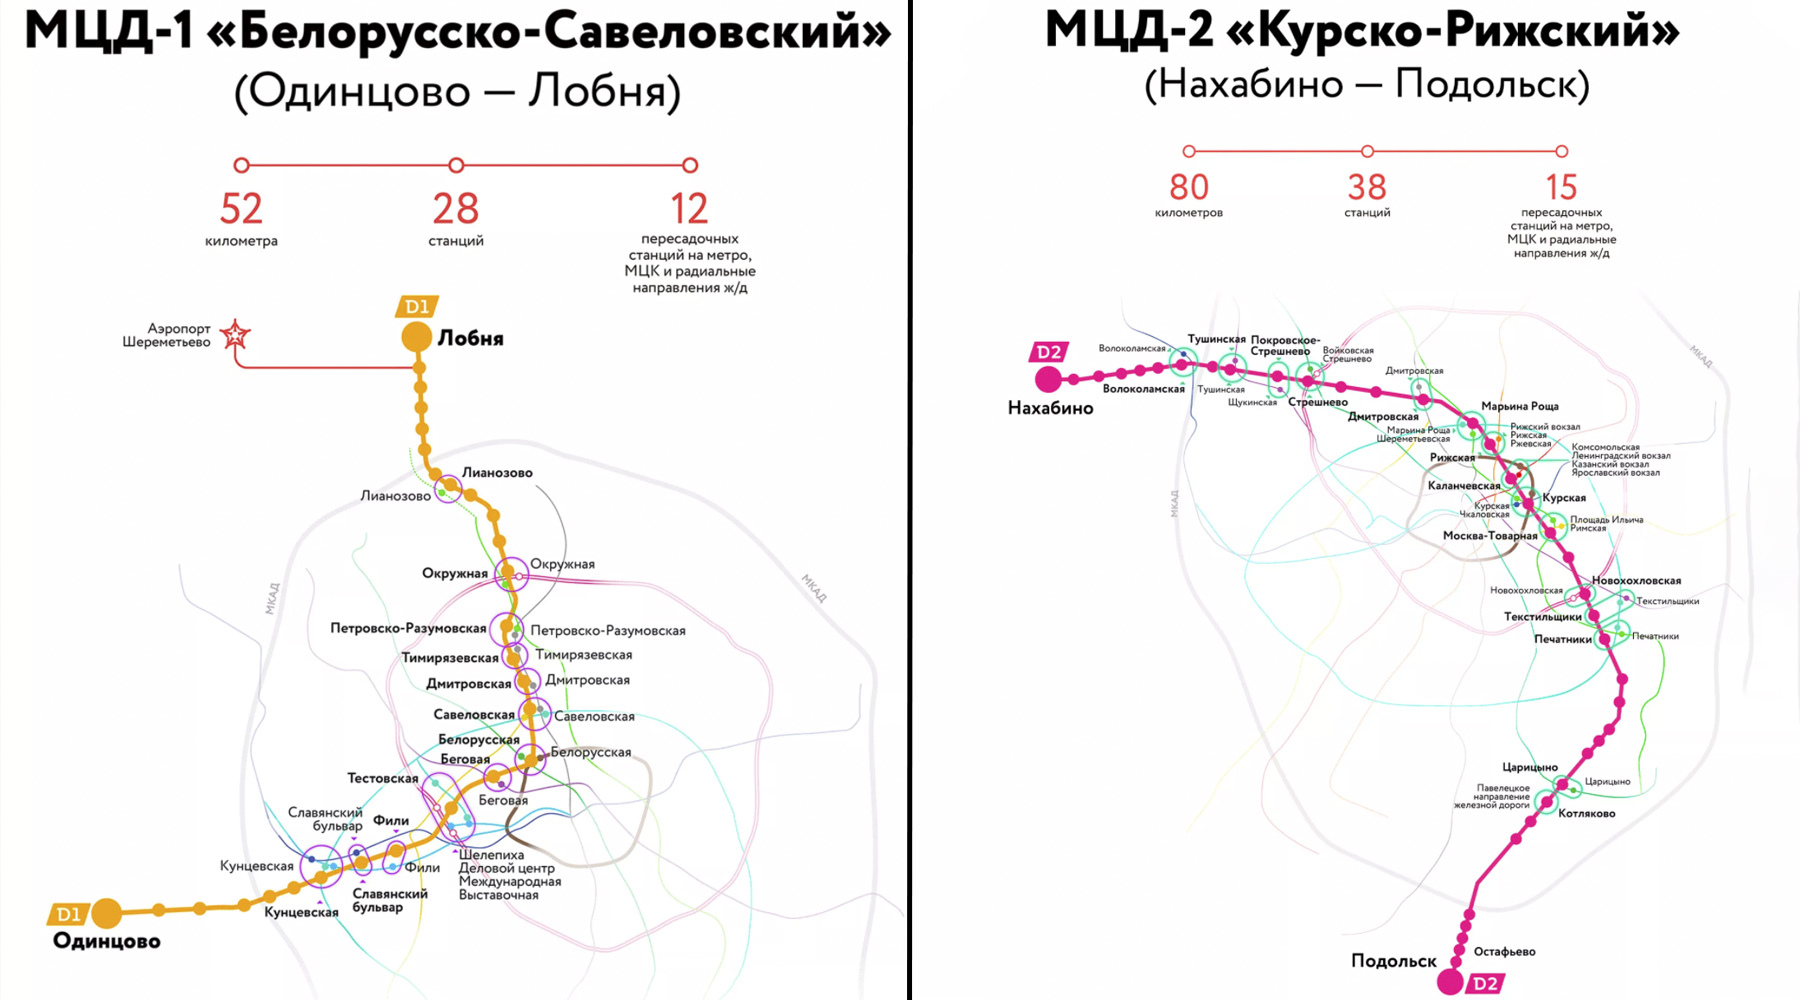 Люблино серпухов расписание. МЦД-2 схема станций. Схема метро Москвы d2. МЦД-1 схема станций. МЦД Подольск схема станций.